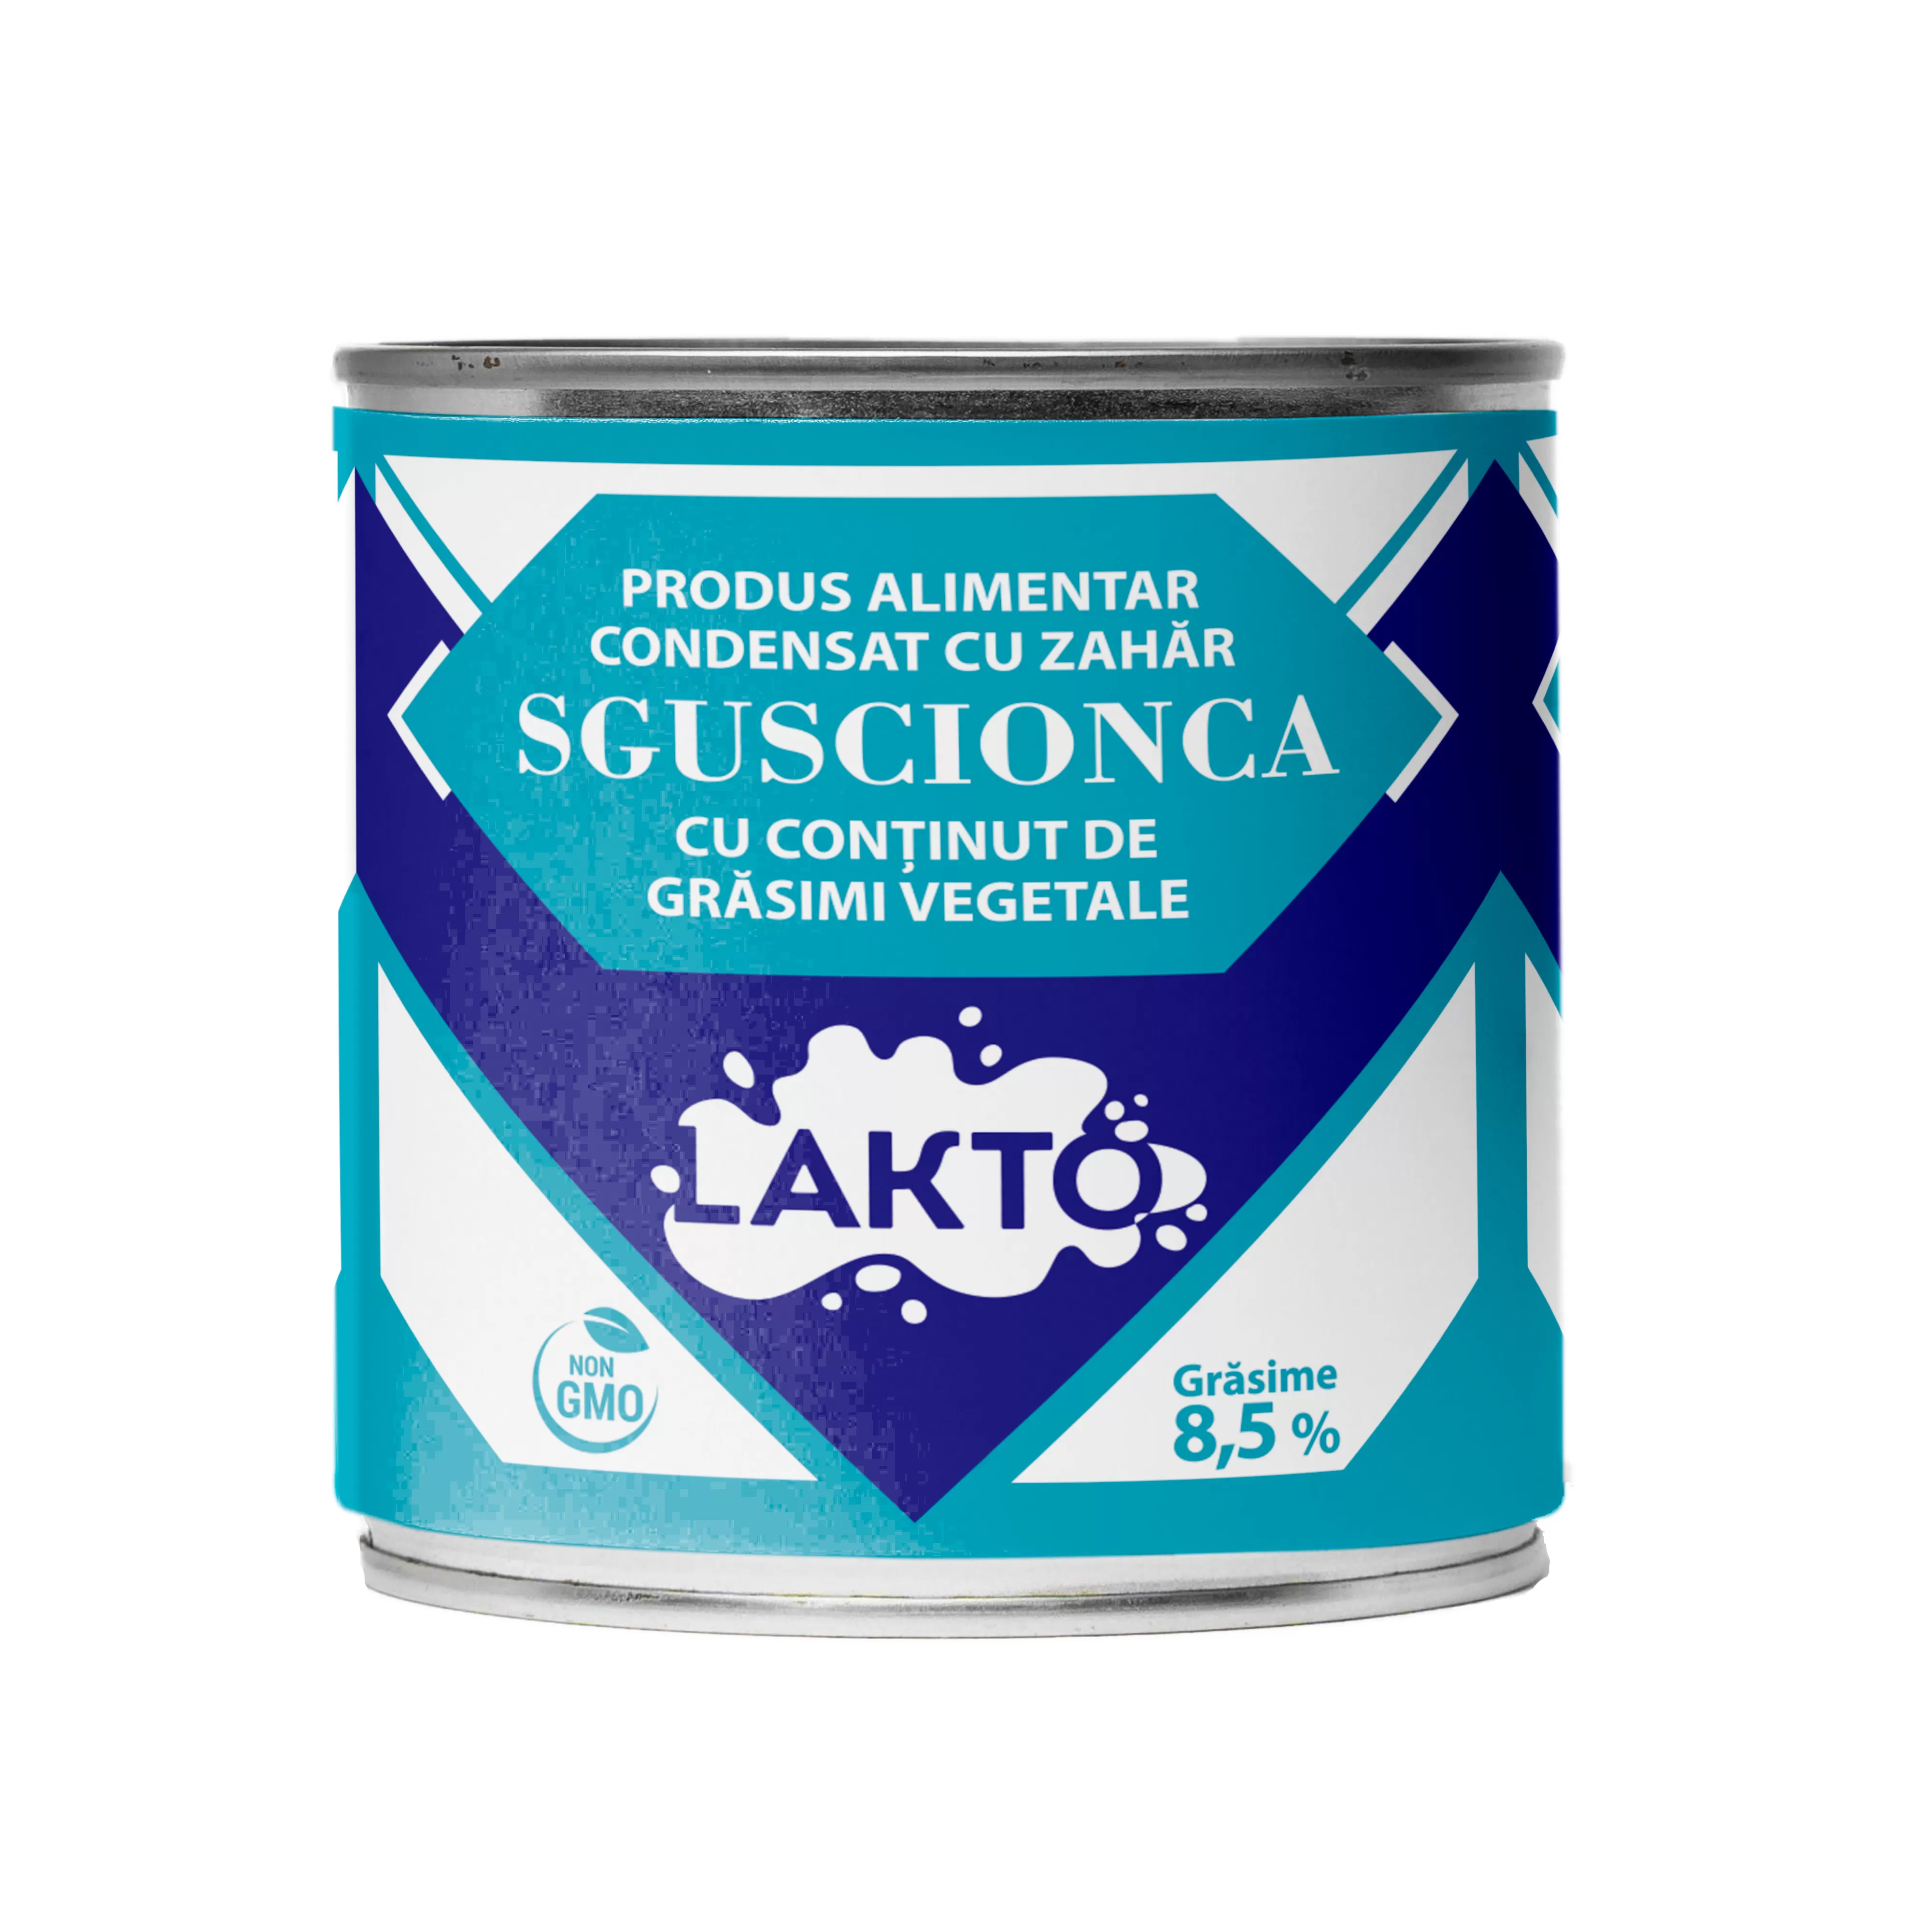 LAKTO Сгущенный пищевой продукт с сахаром Sguscionca 8,5%, 370г